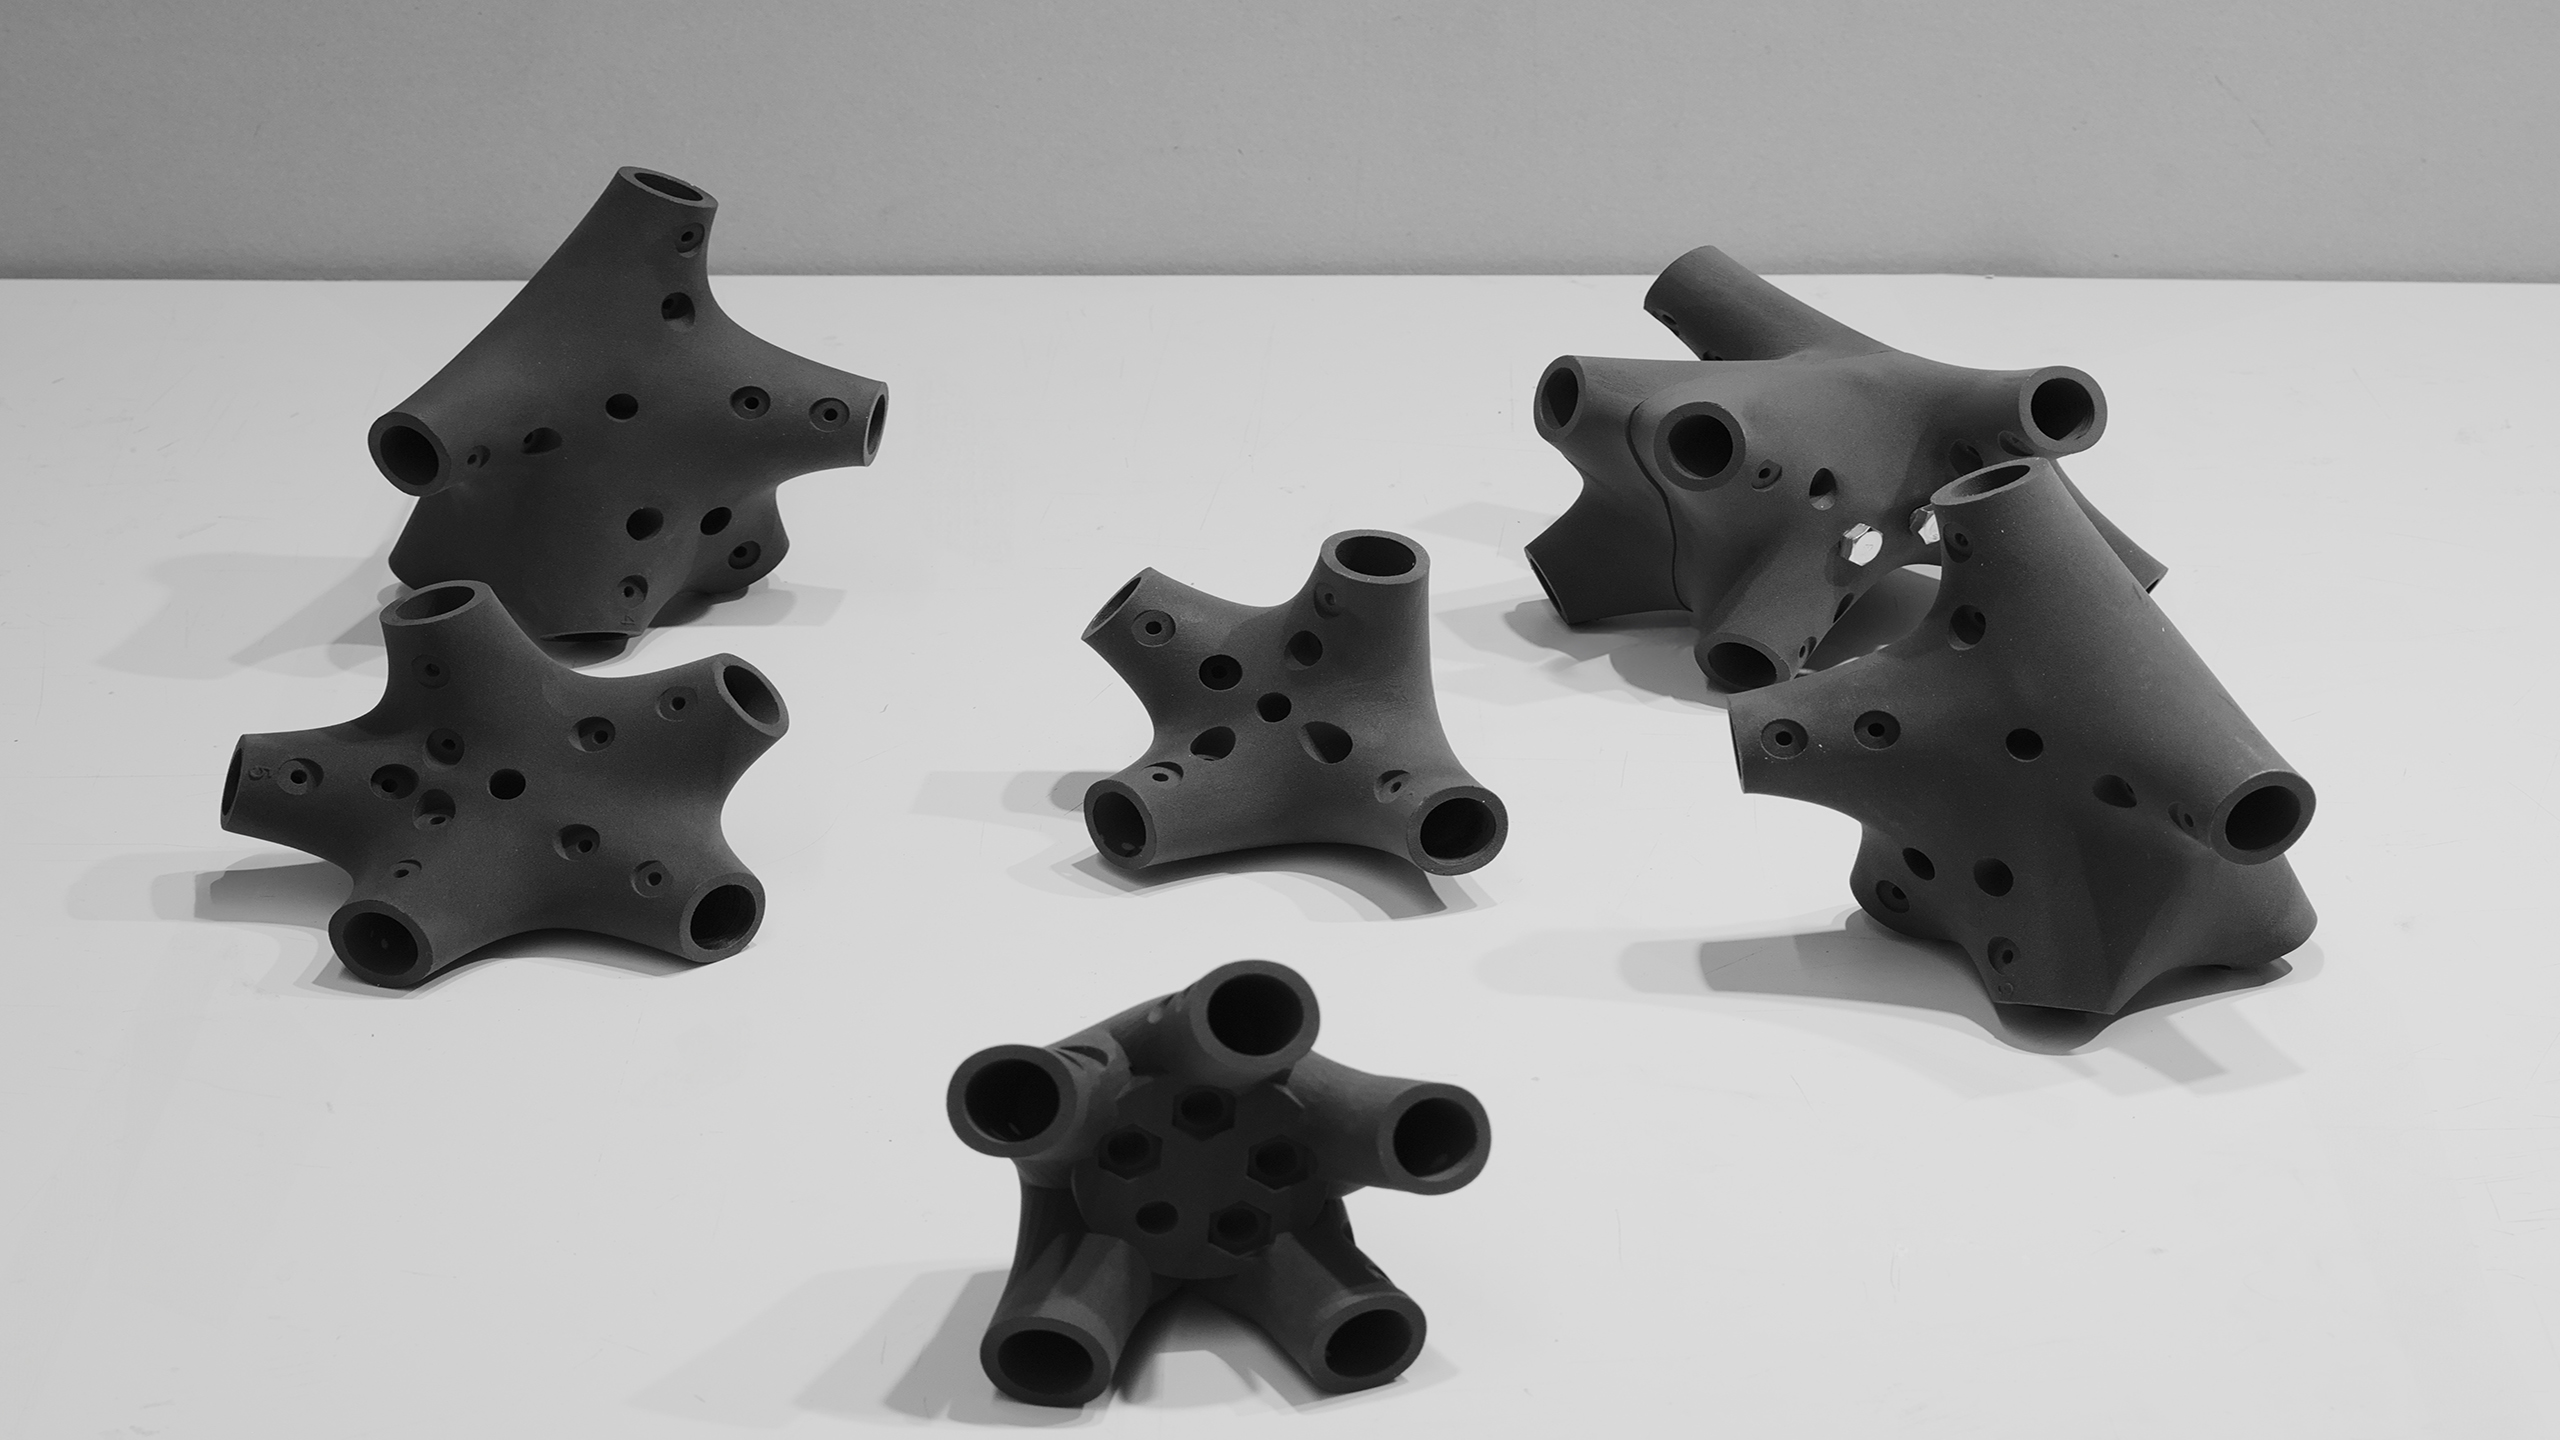 Six 3D-printed connector pieces of NOVA